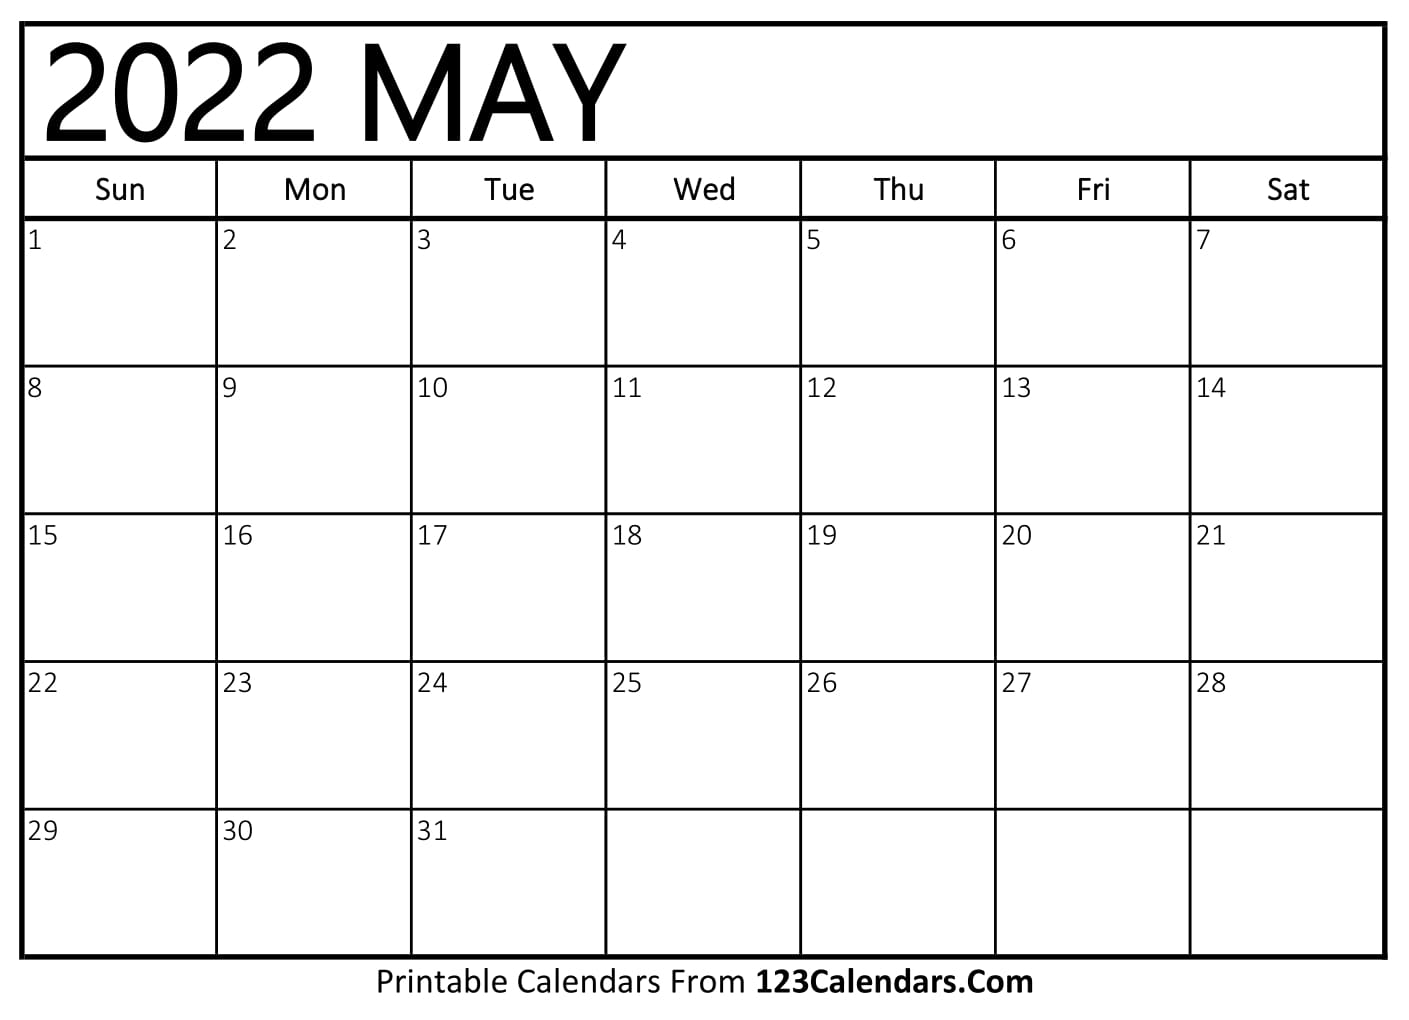 Printable 2022 May Calendar Printable May 2022 Calendar Templates - 123Calendars.com